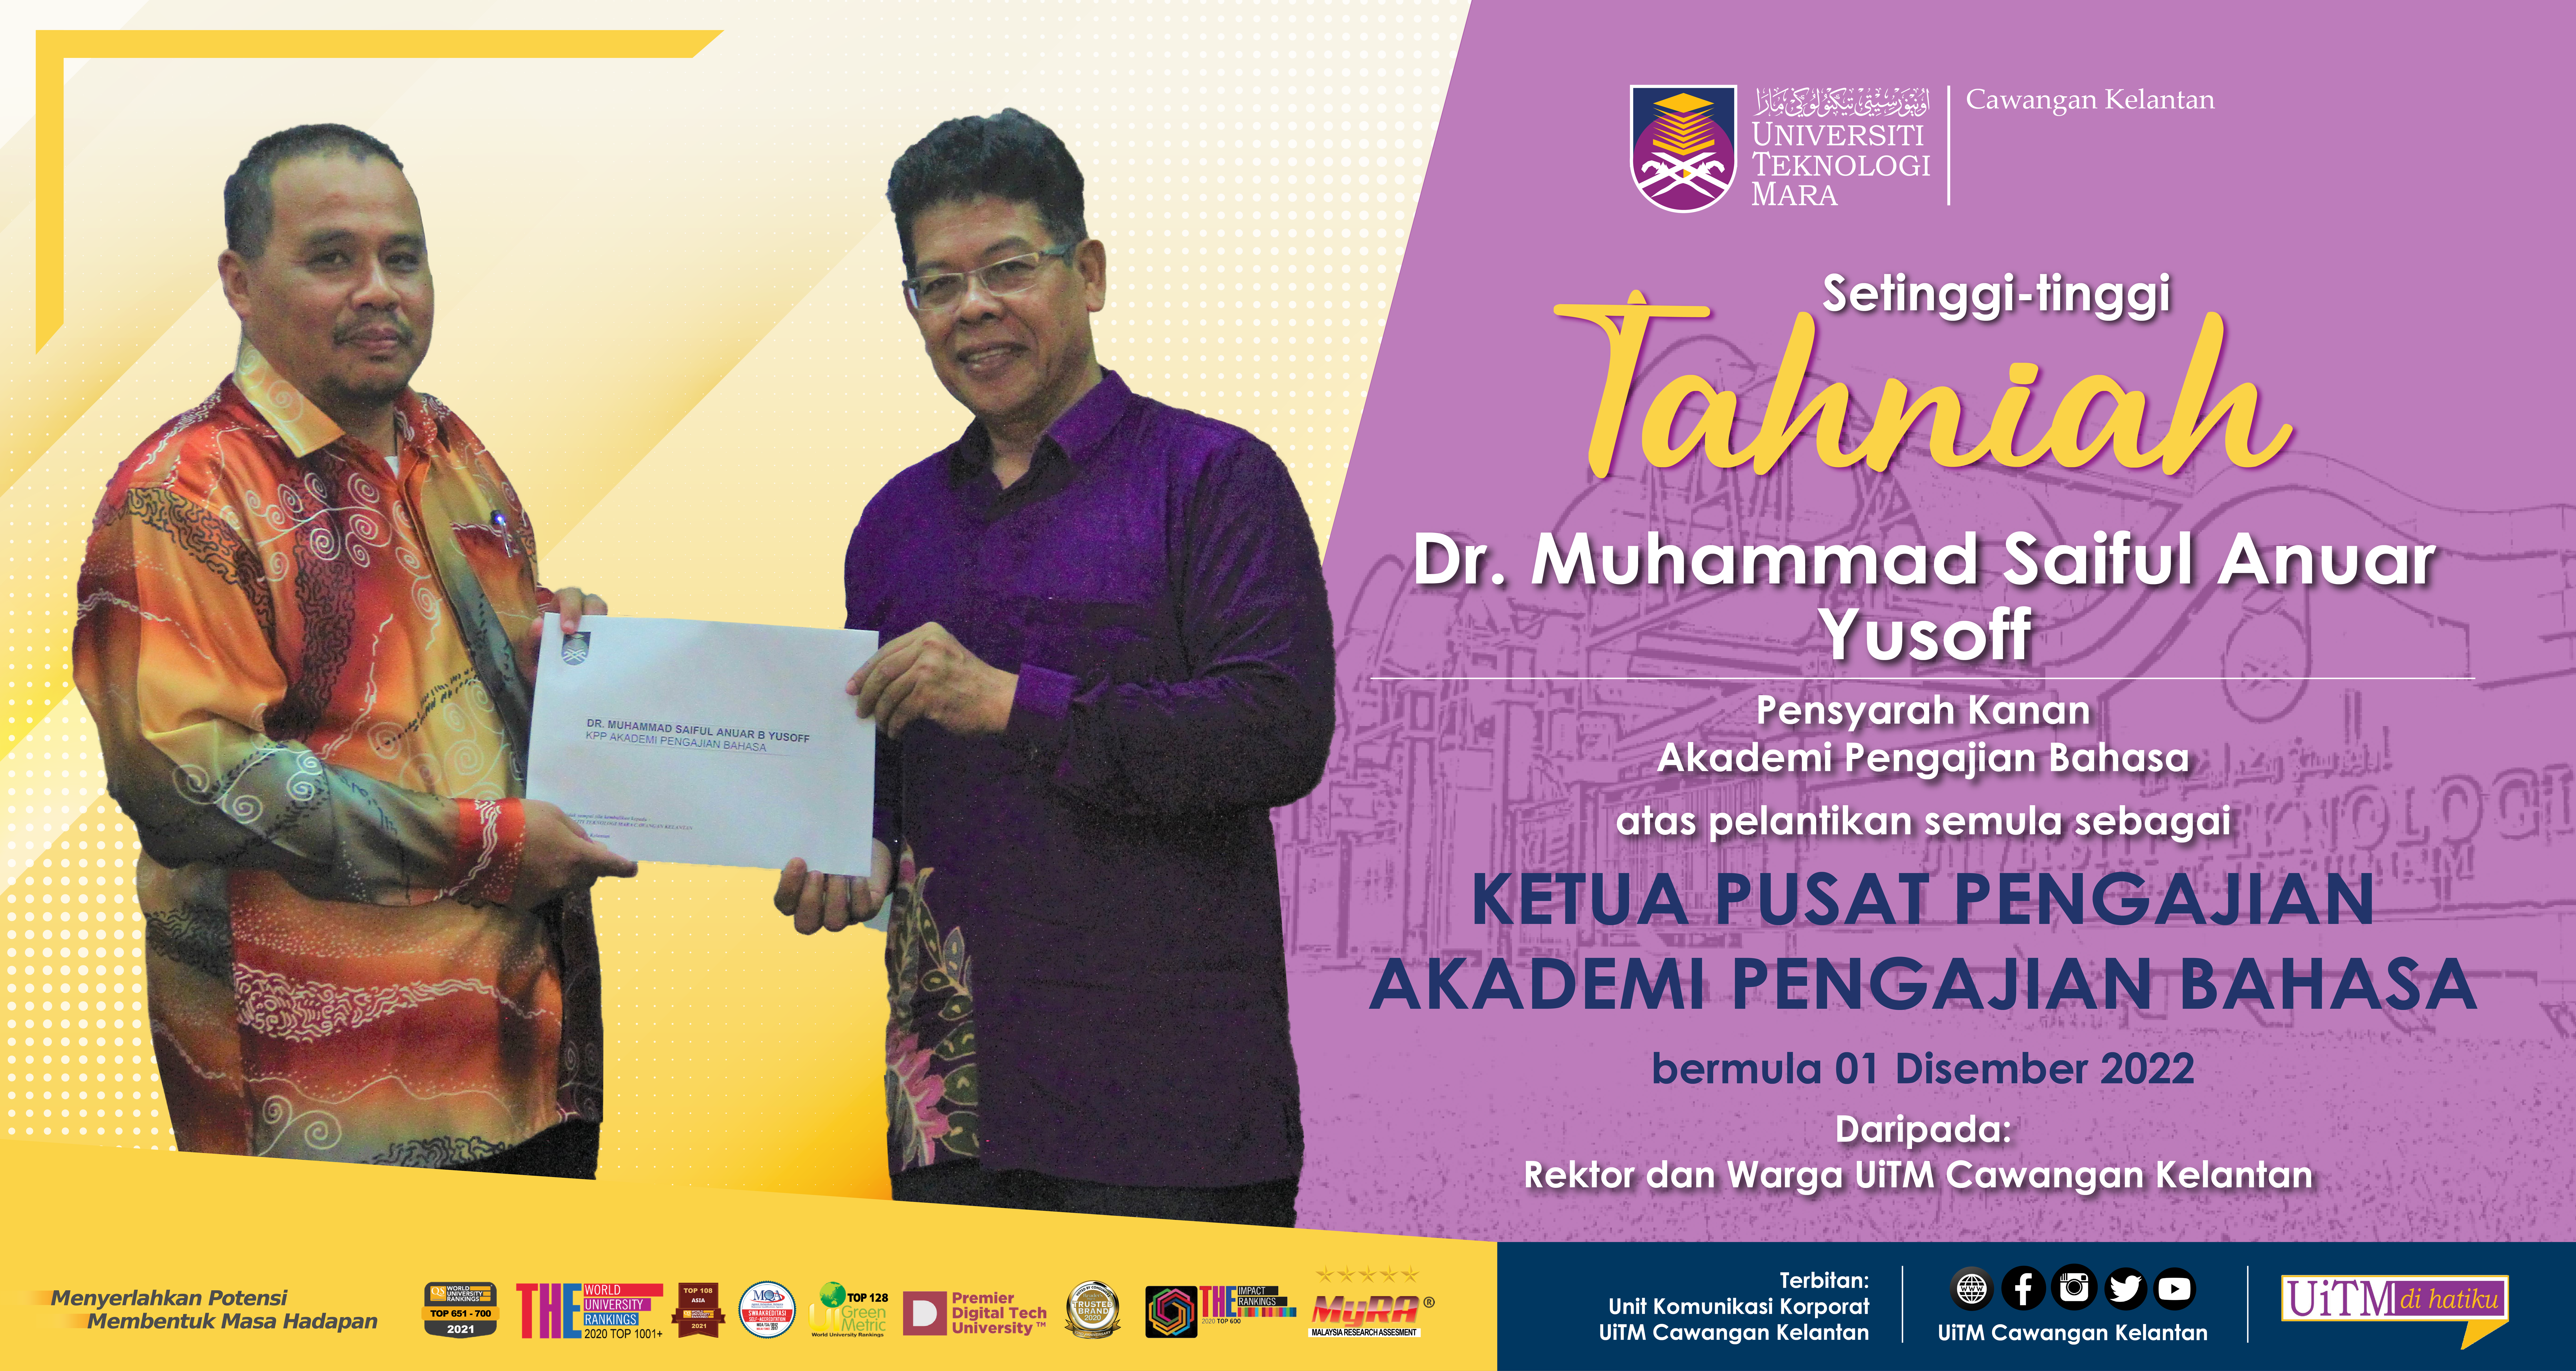 Tahniah!!! Dr. Muhammad Saiful Anuar Yusoff, Ketua Pusat Pengajian Akademi Pengajian Bahasa